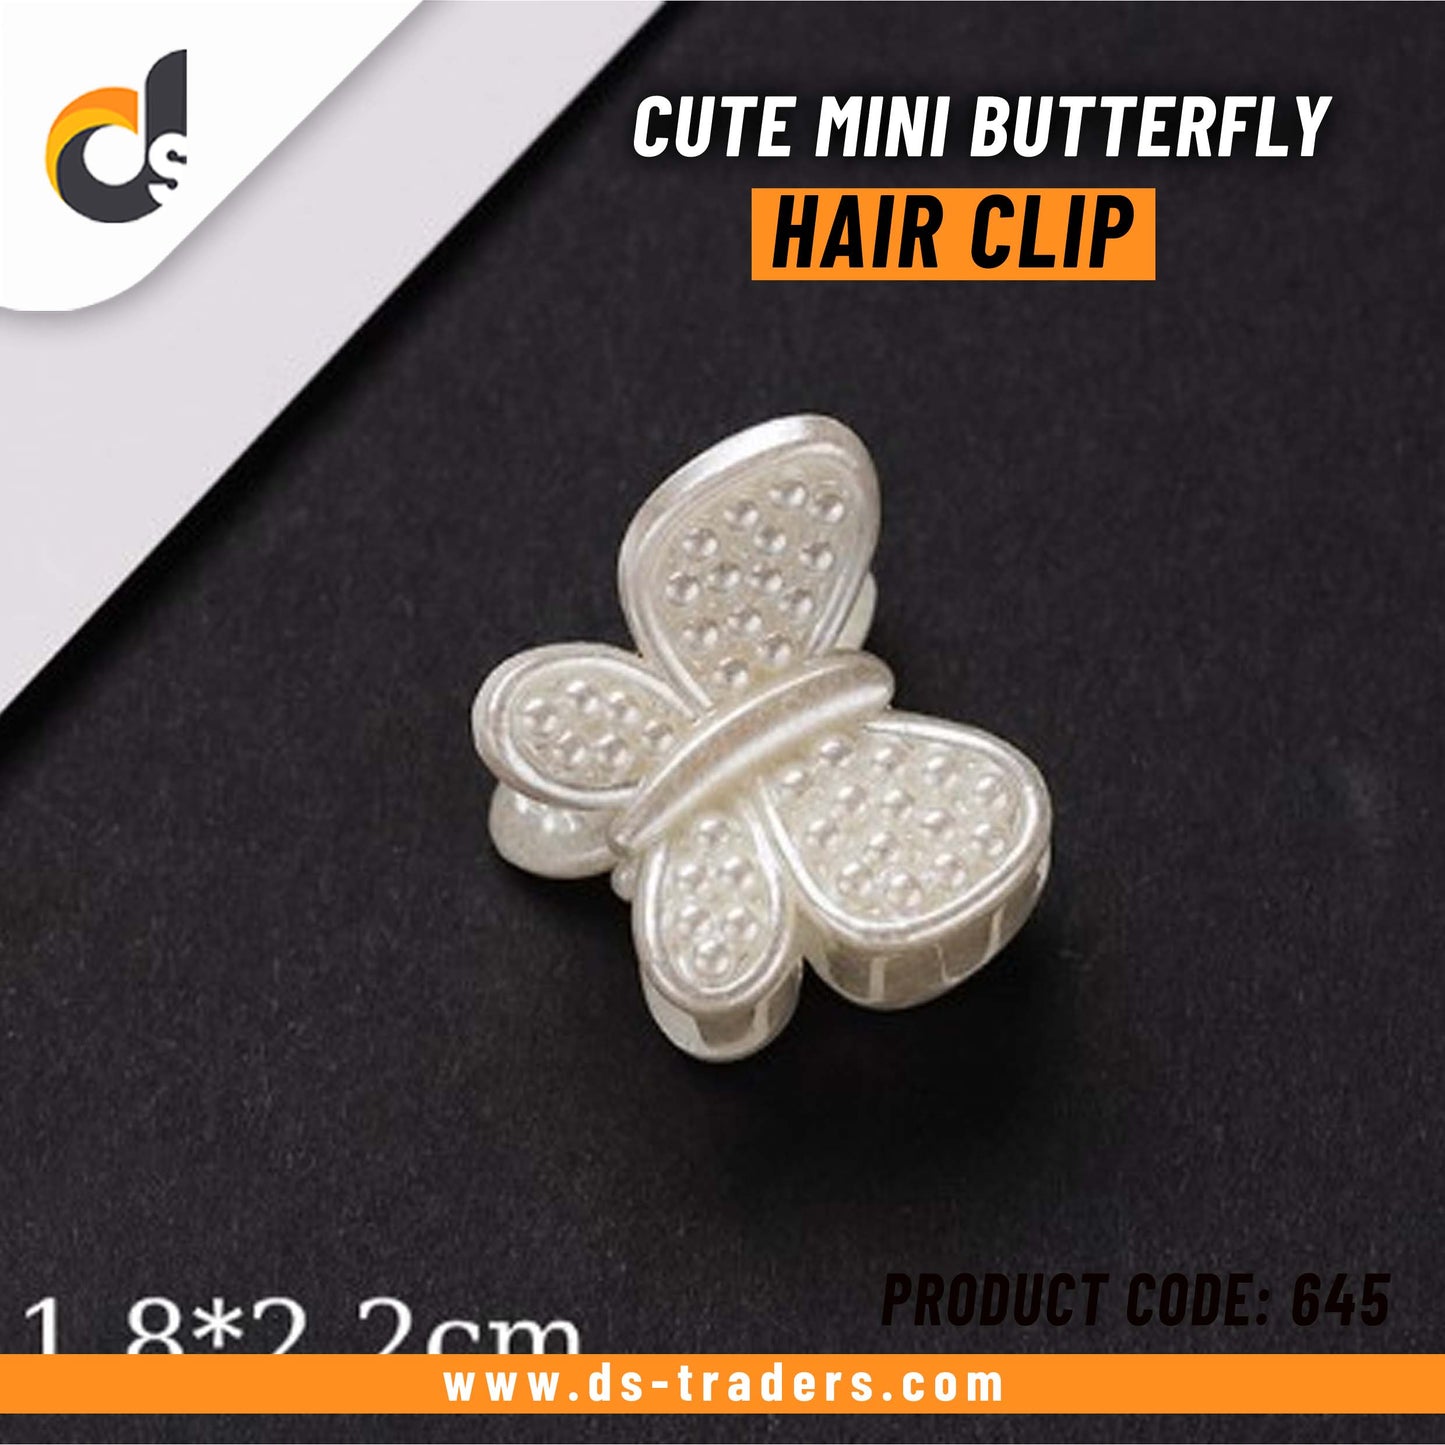 Cute Mini Butterfly Hair Clip